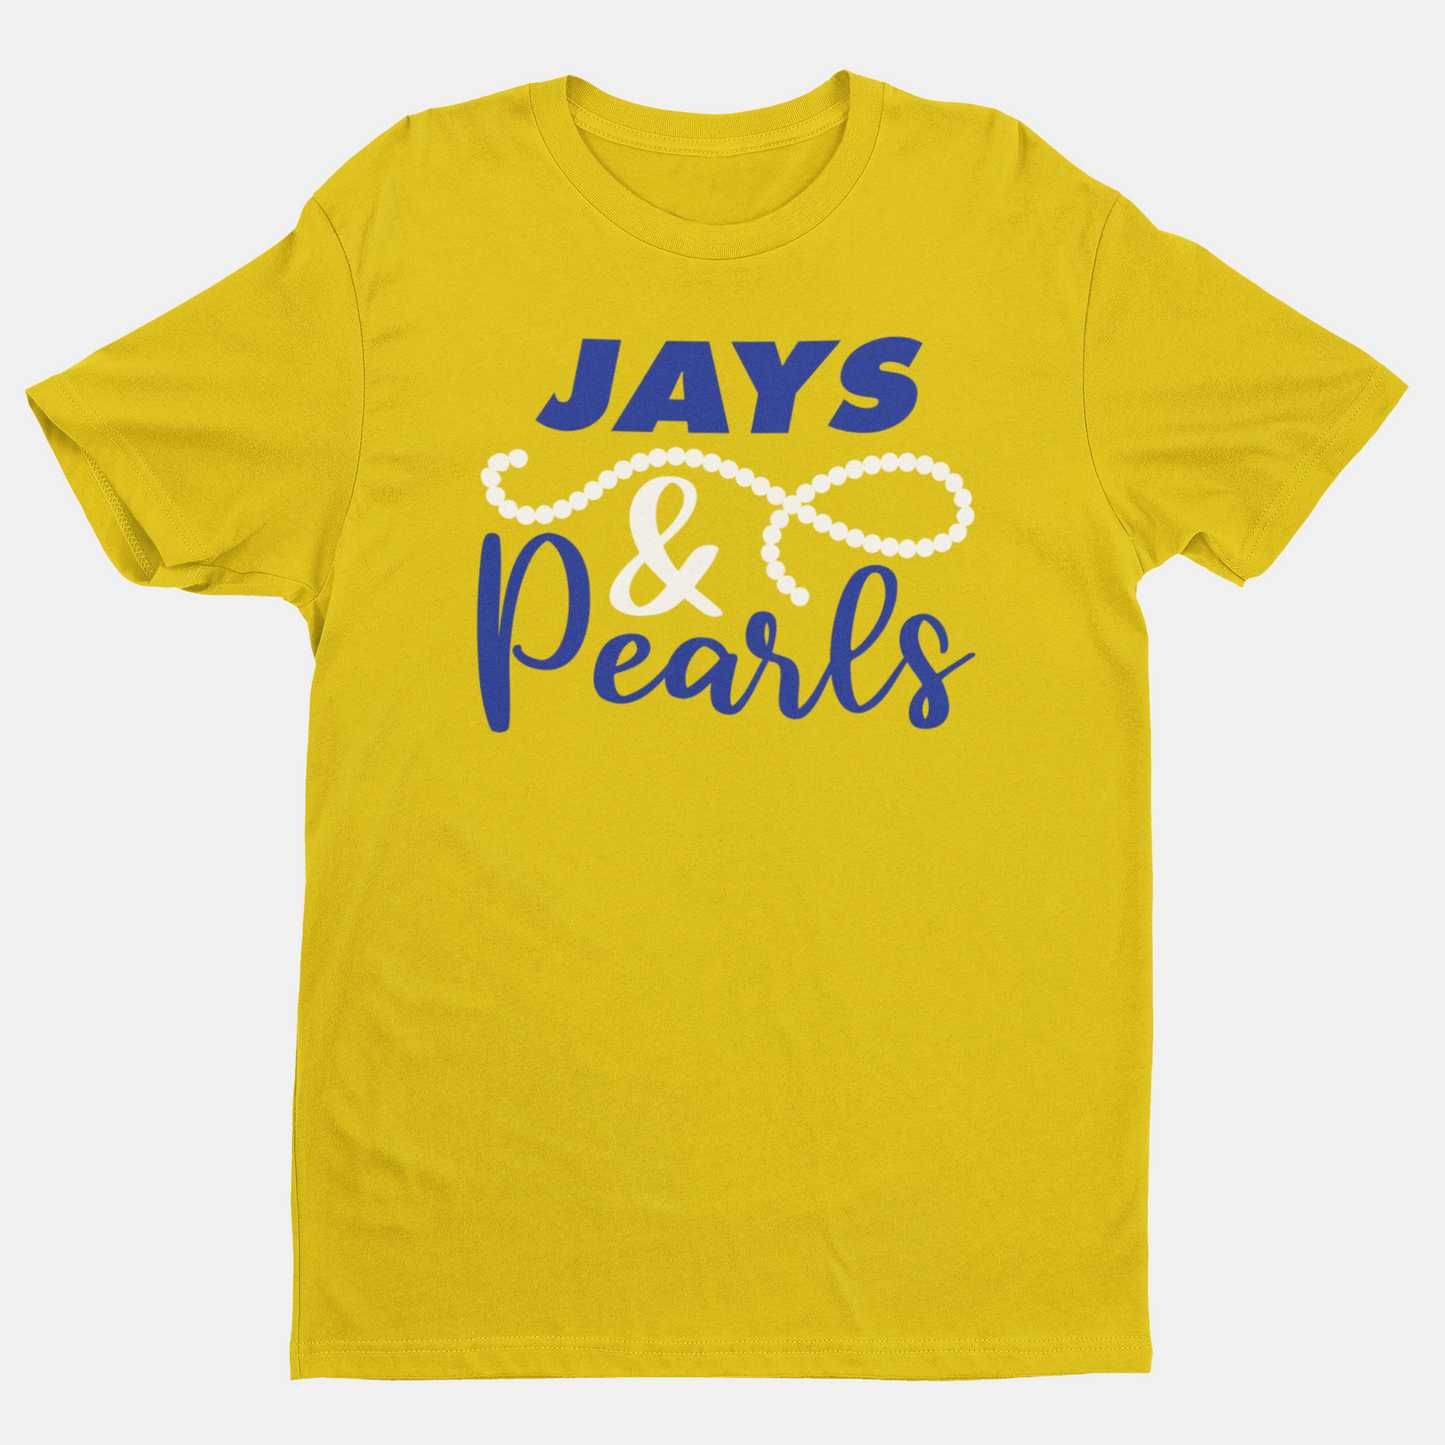 Jays & Pearls